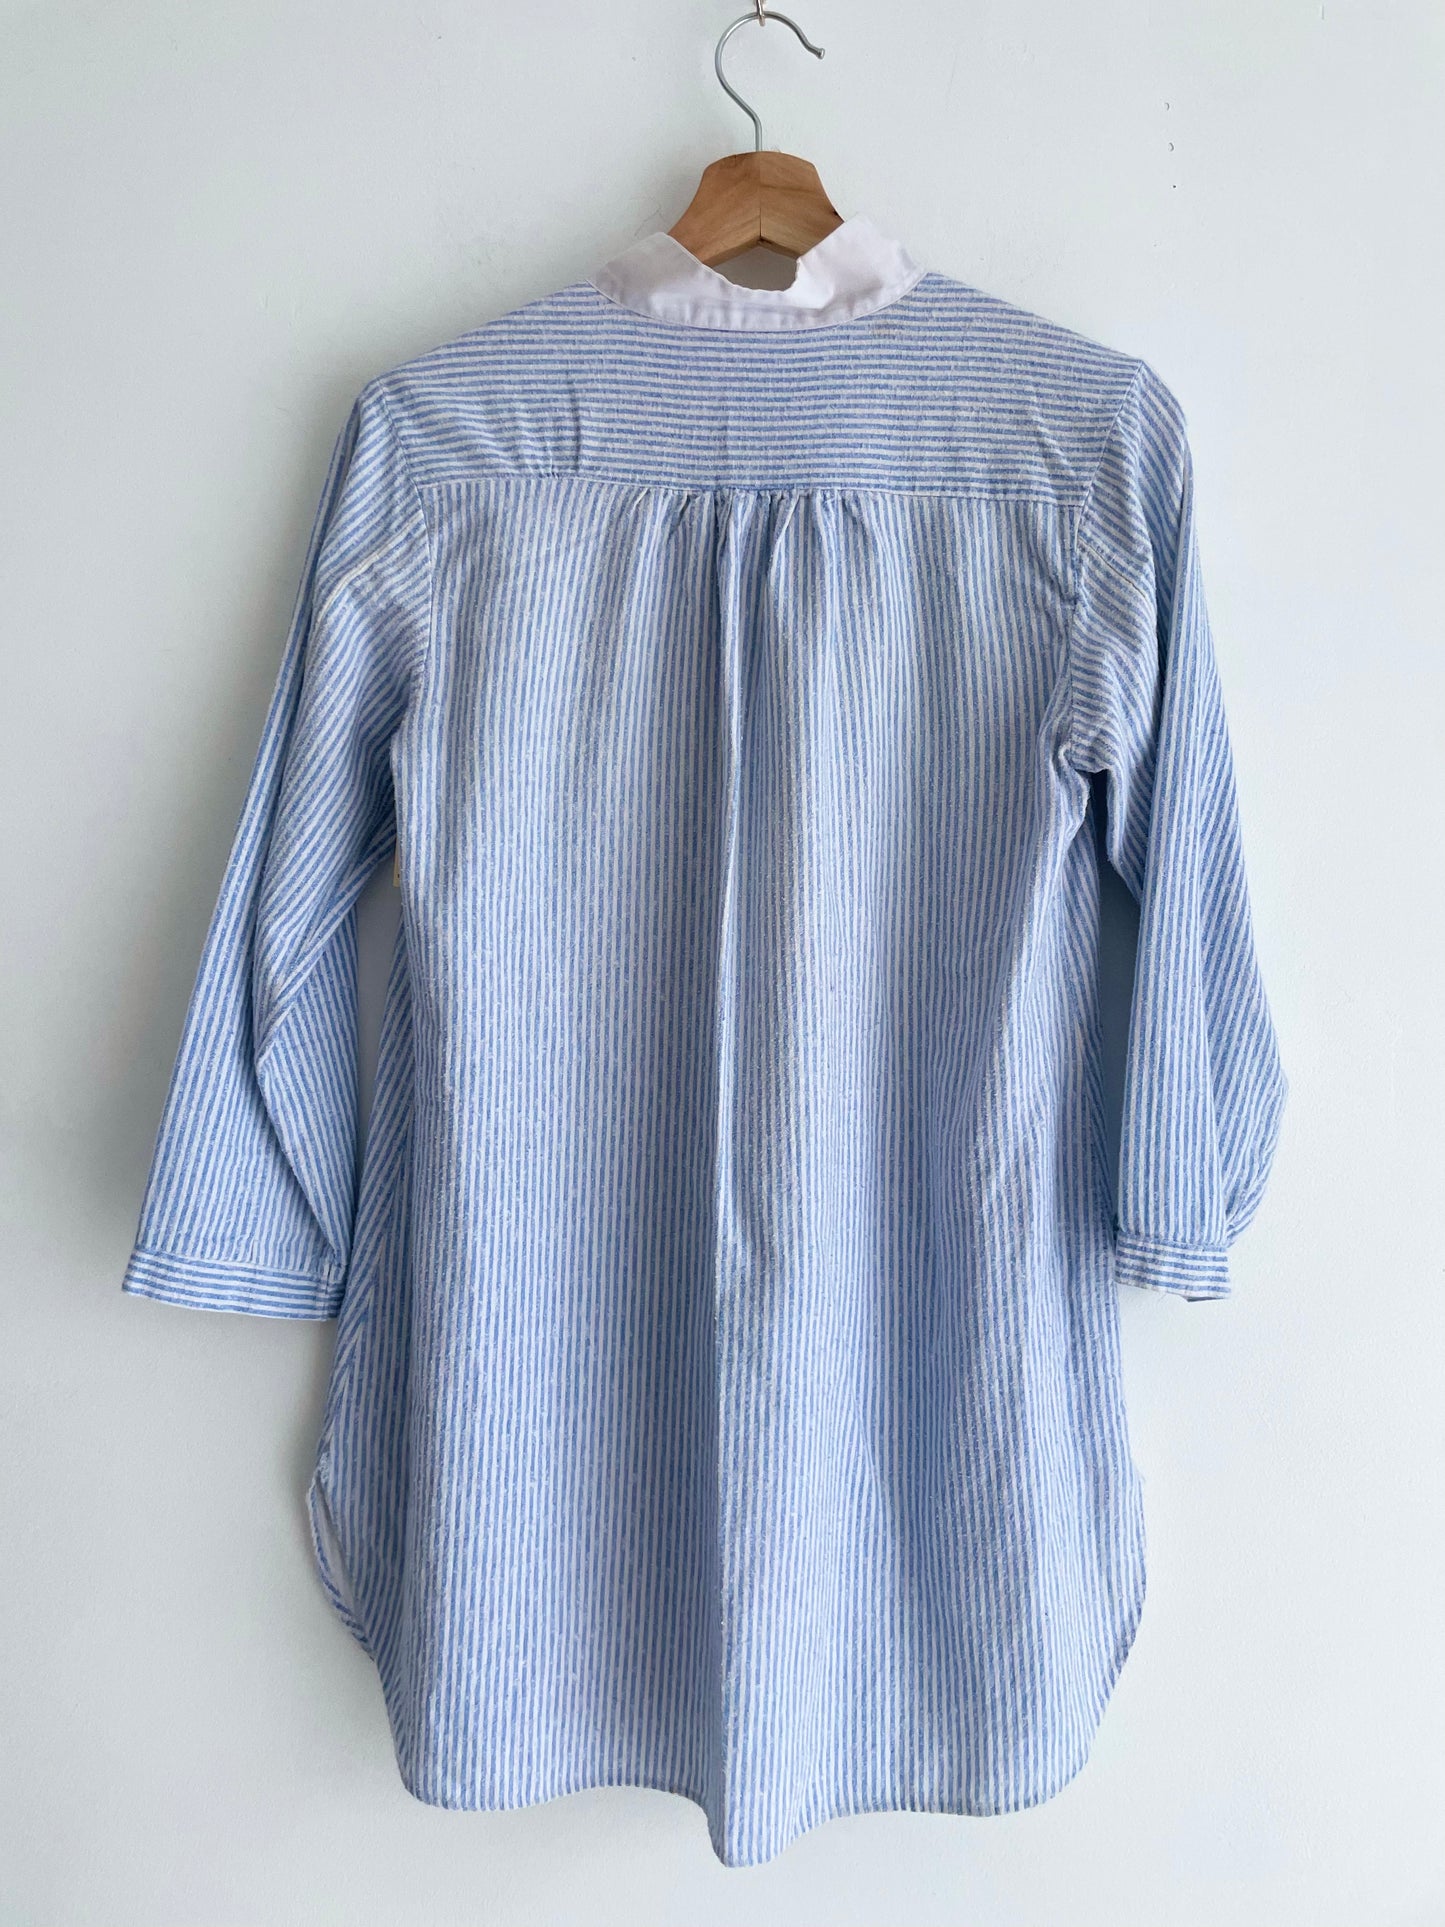 Vintage Sleep Shirt | Medium-Large